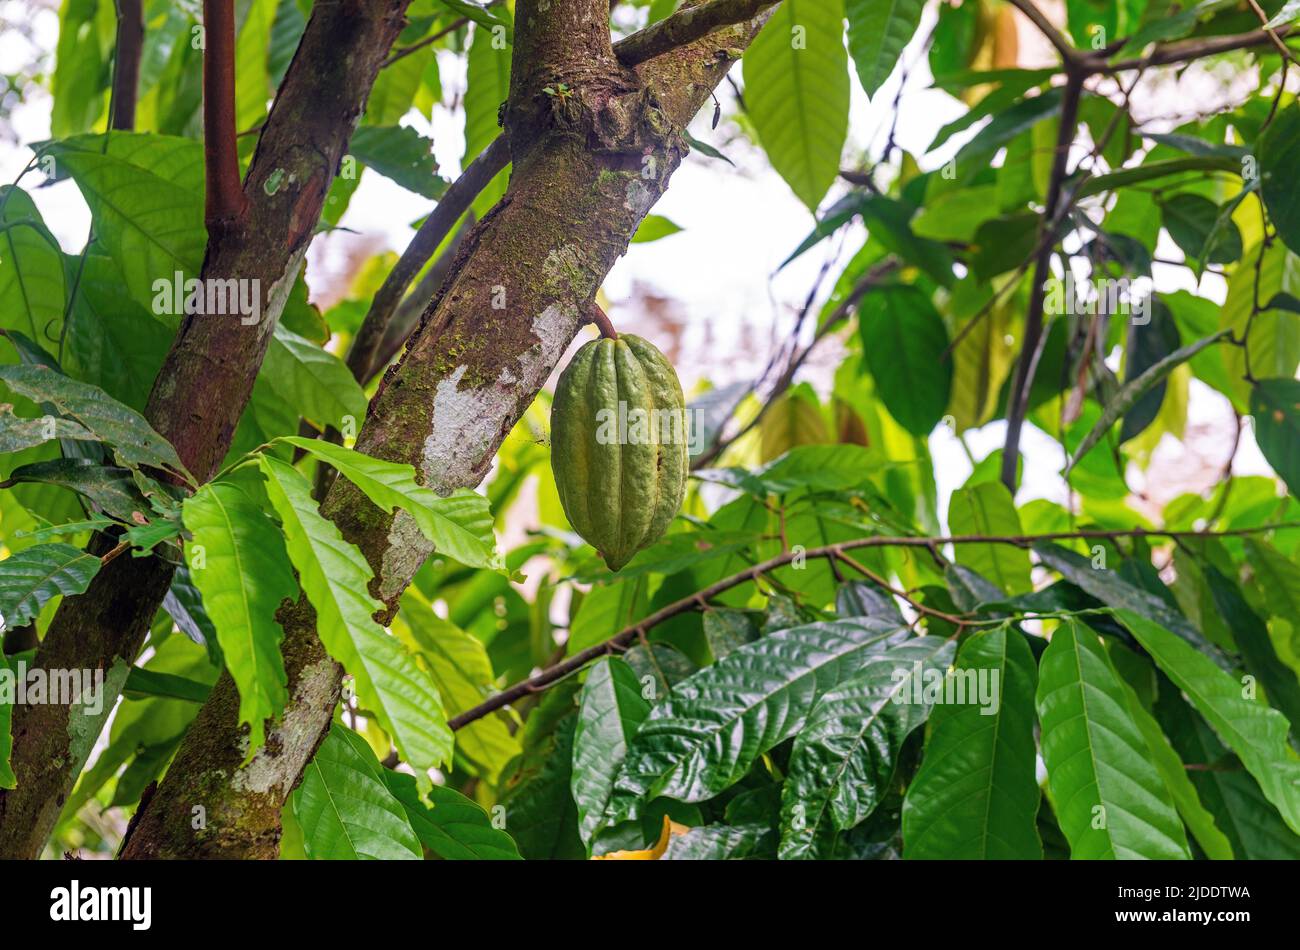 Gousse de cacao vert ou peu mûr (Theobroma cacao) sur l'arbre de cacao, forêt amazonienne, Equateur. Banque D'Images